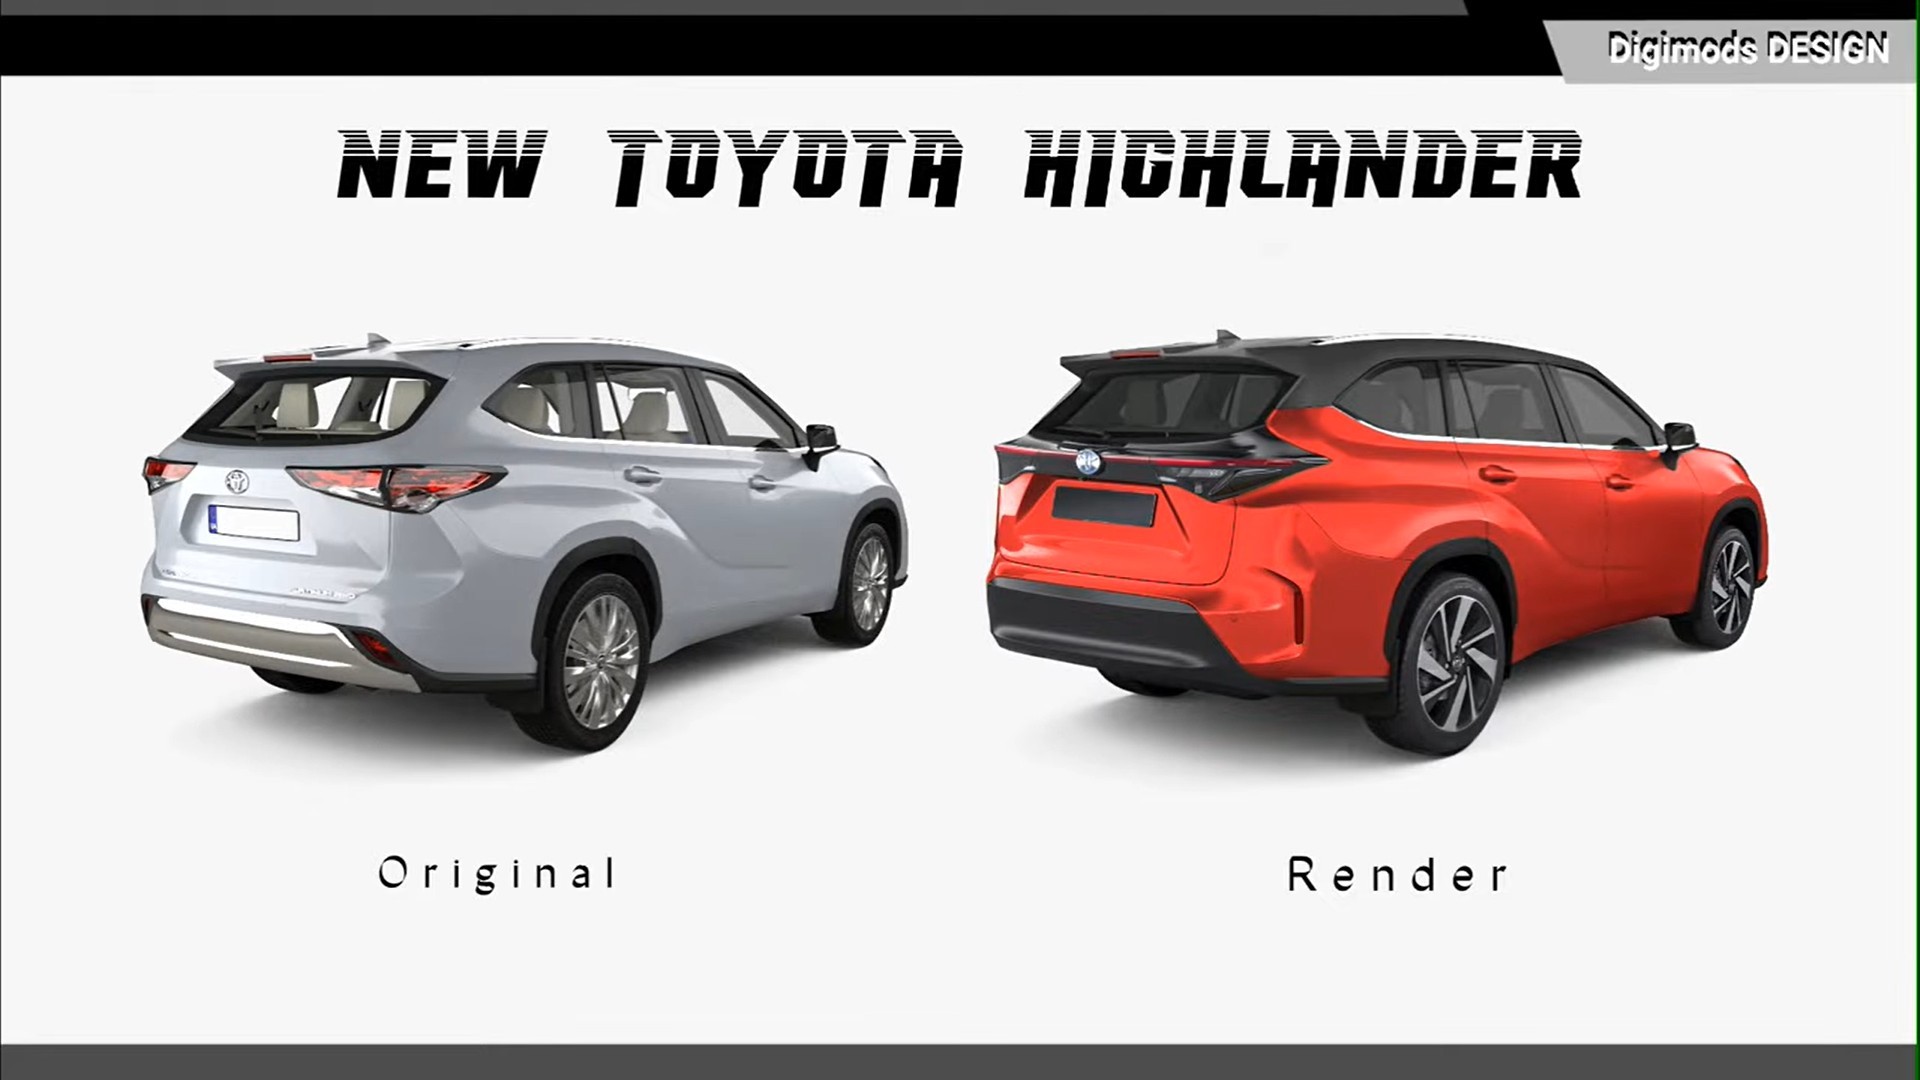 Ảnh phác họa thiết kế Toyota Highlander mới cực ngầu, quyết đấu Honda Pilot sculpted-all-new-toyota-highlander-gets-unofficially-ready-to-fight-honda-s-pilot-2.jpg